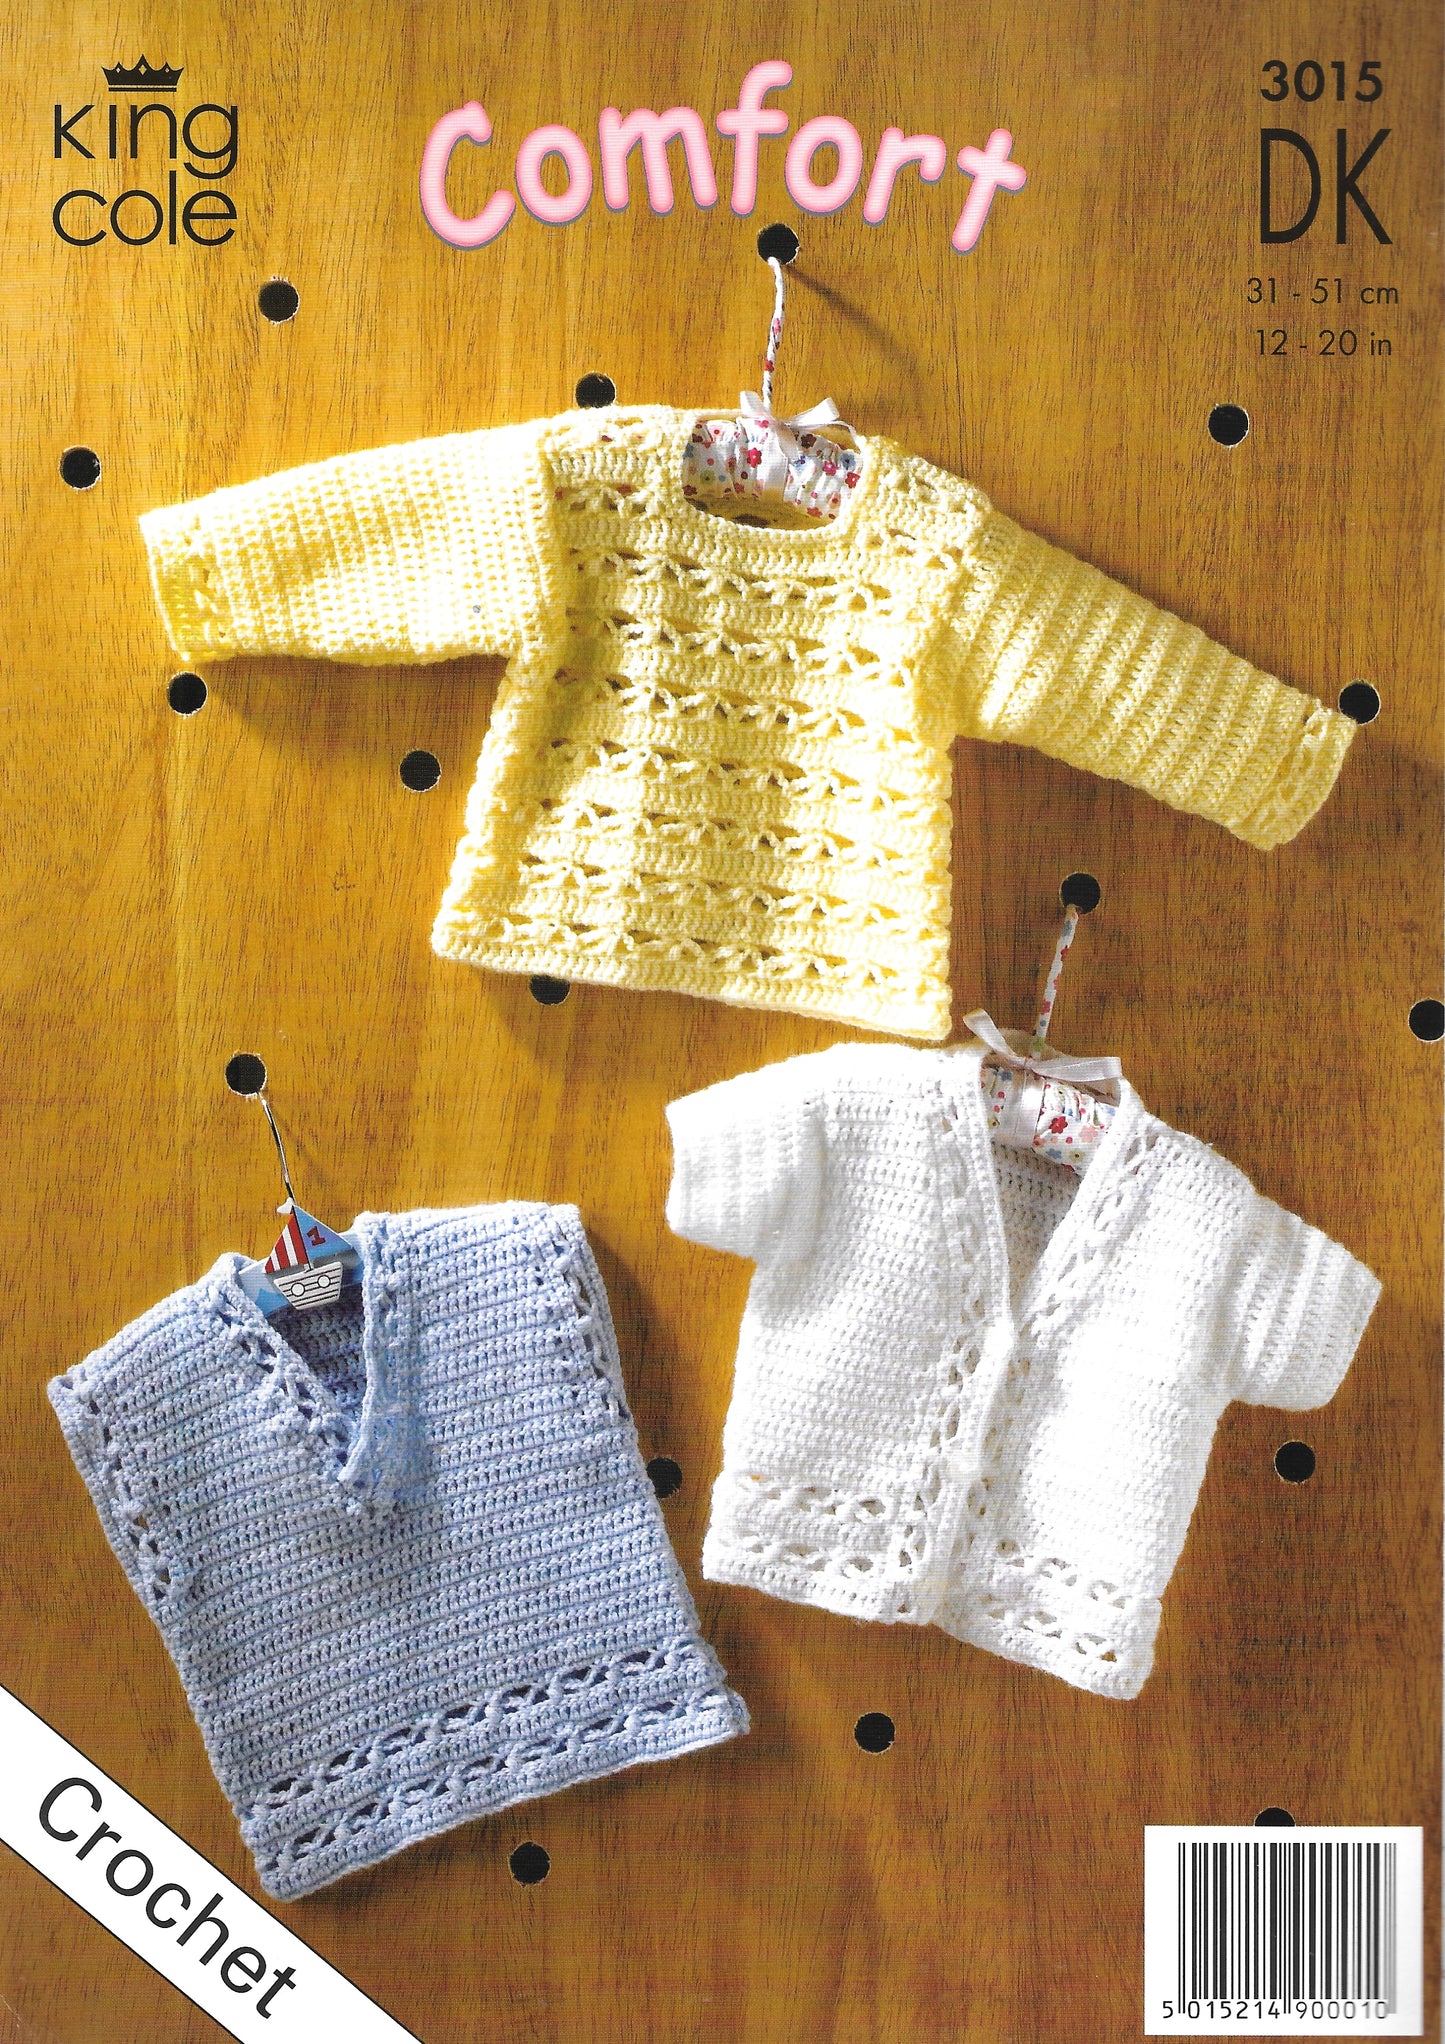 3015 King Cole Crochet pattern. Sweater/Cardigan. DK